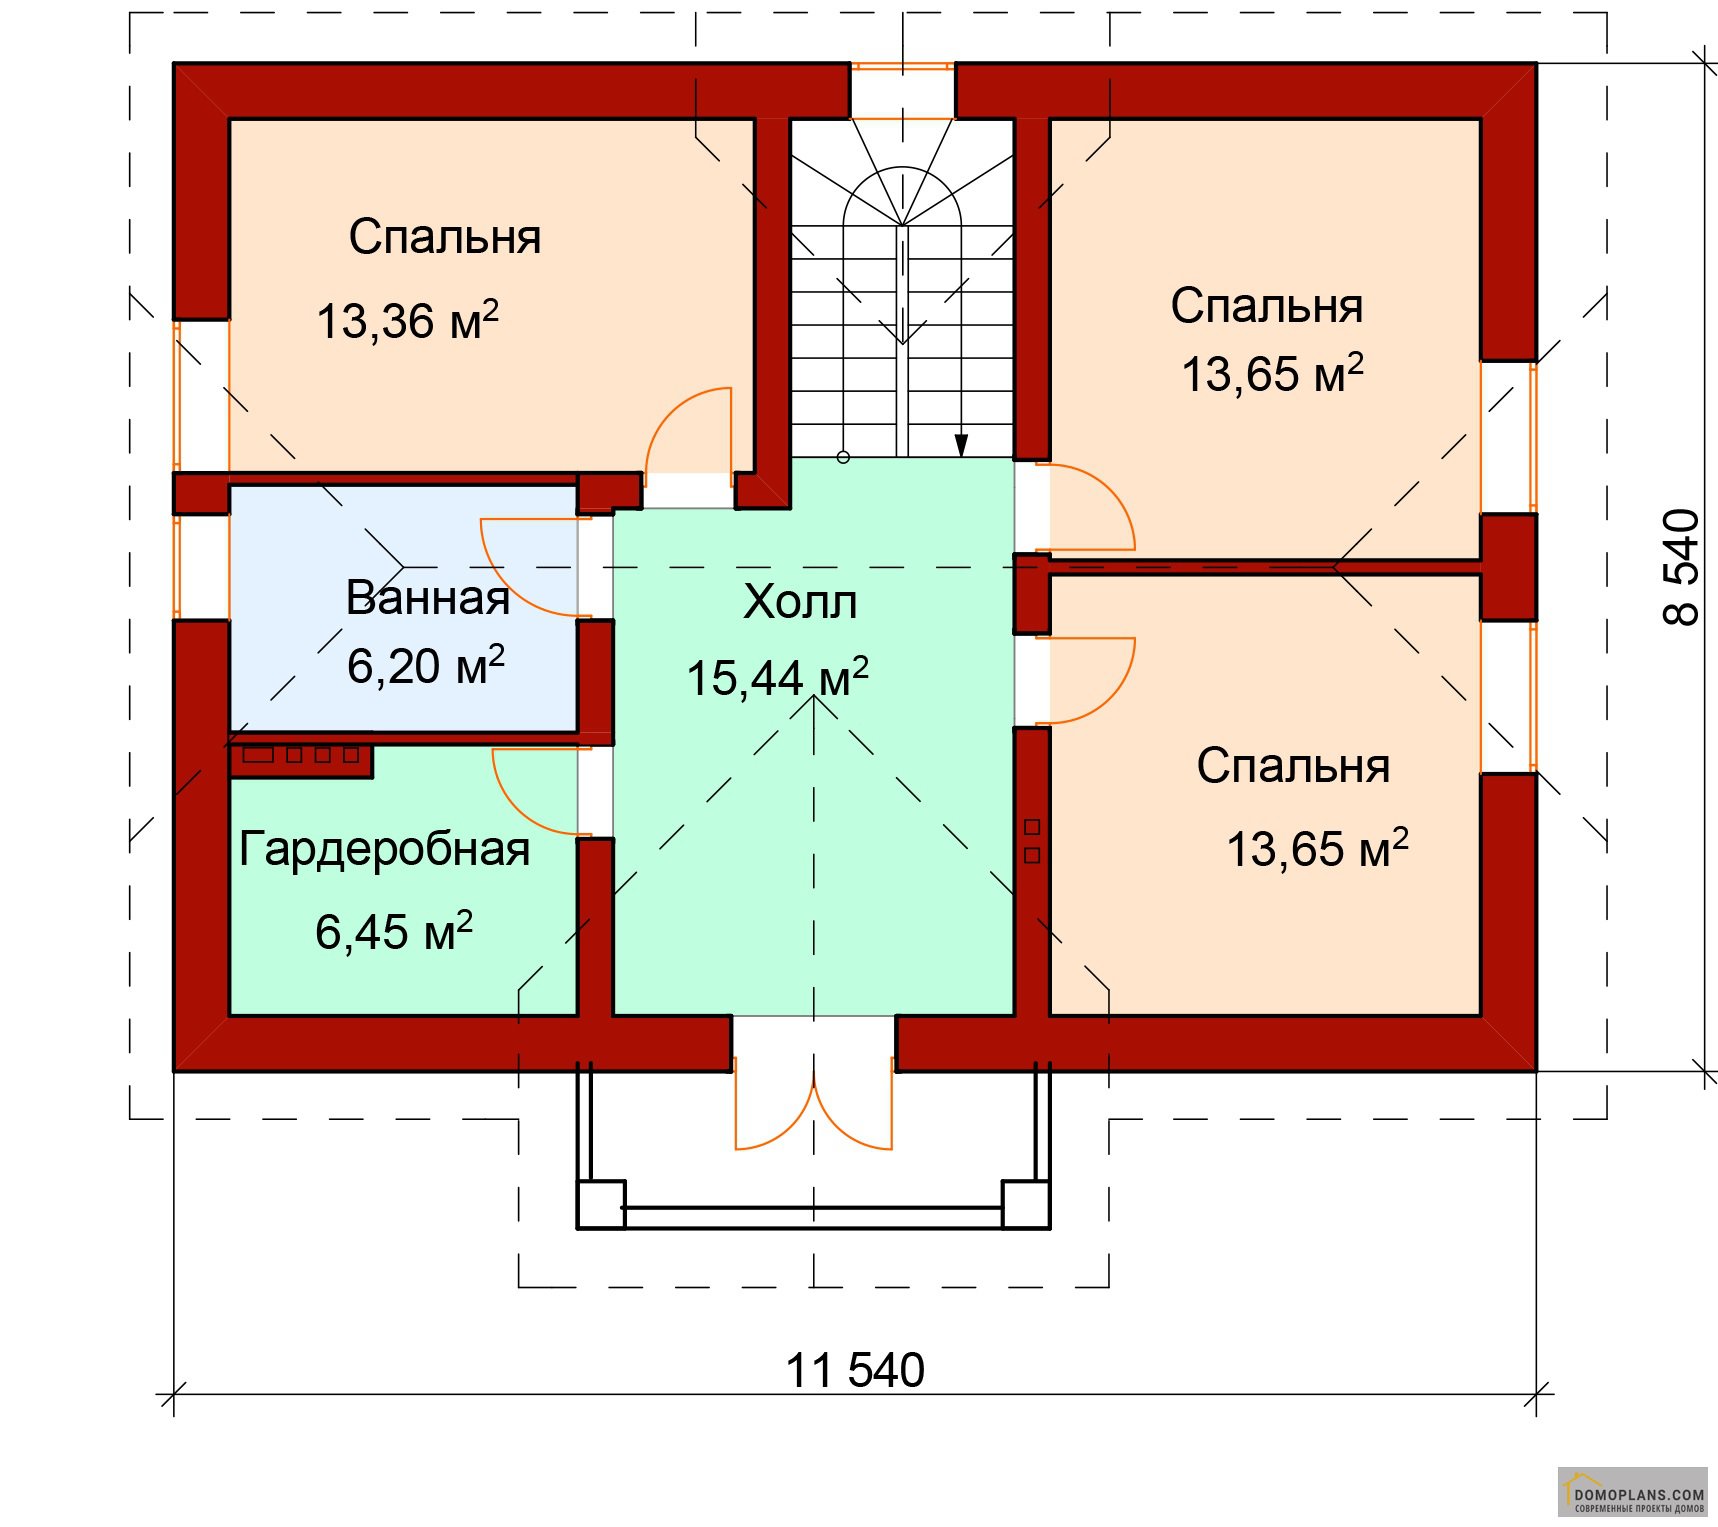 Планировка дома с 2 спальнями на 1 этаже